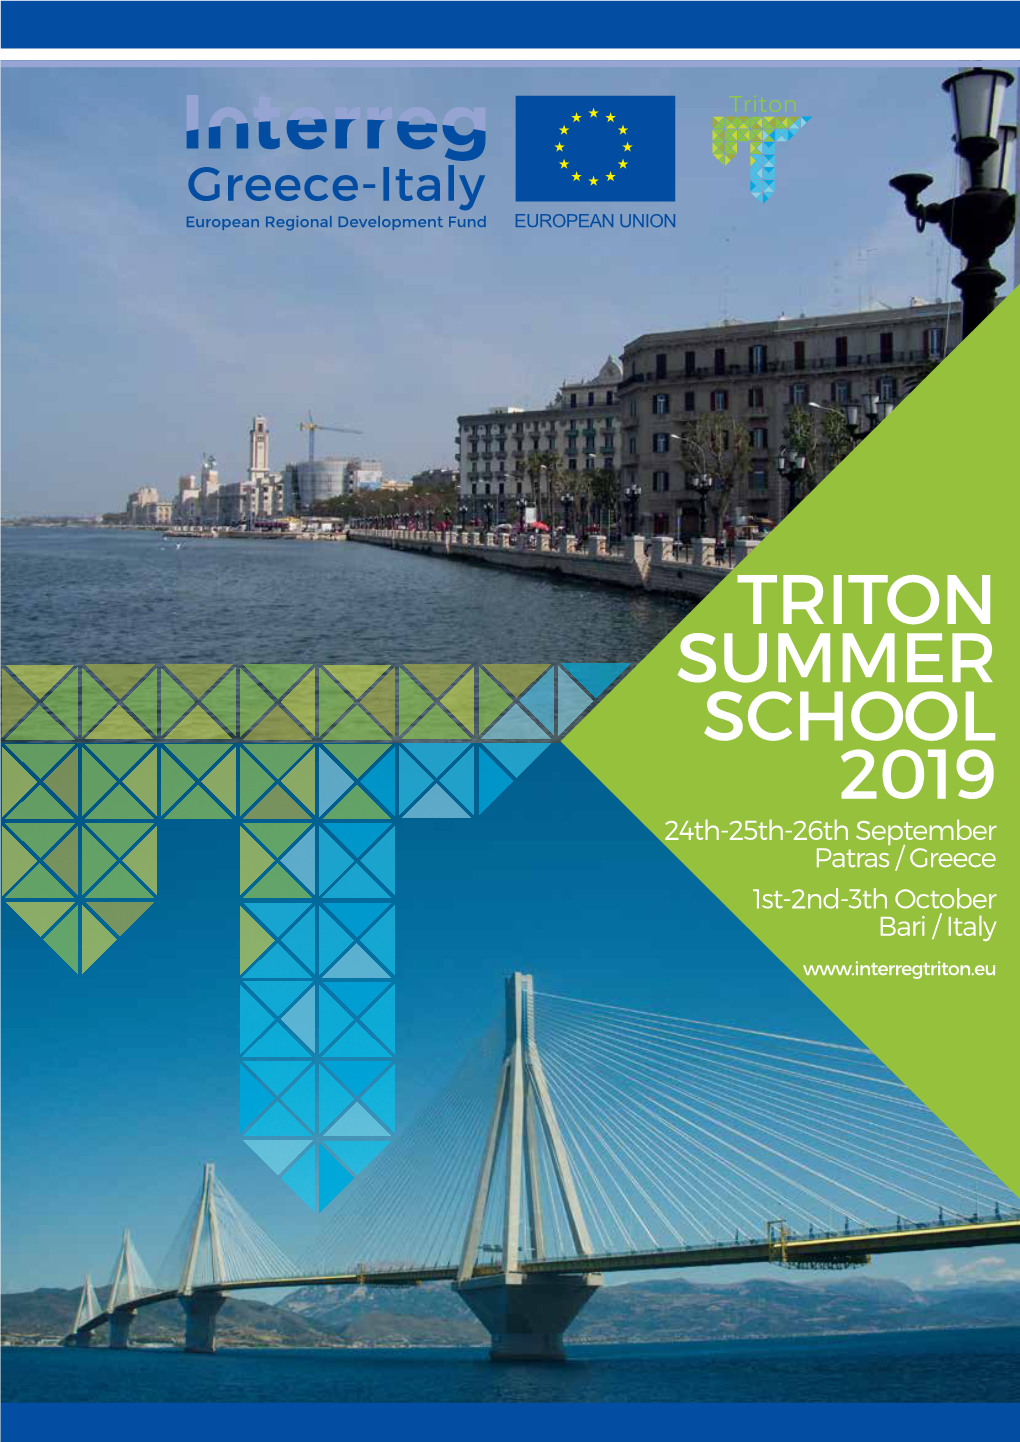 TRITON SUMMER SCHOOL 2019 24Th-25Th-26Th September Patras / Greece 1St-2Nd-3Th October Bari / Italy